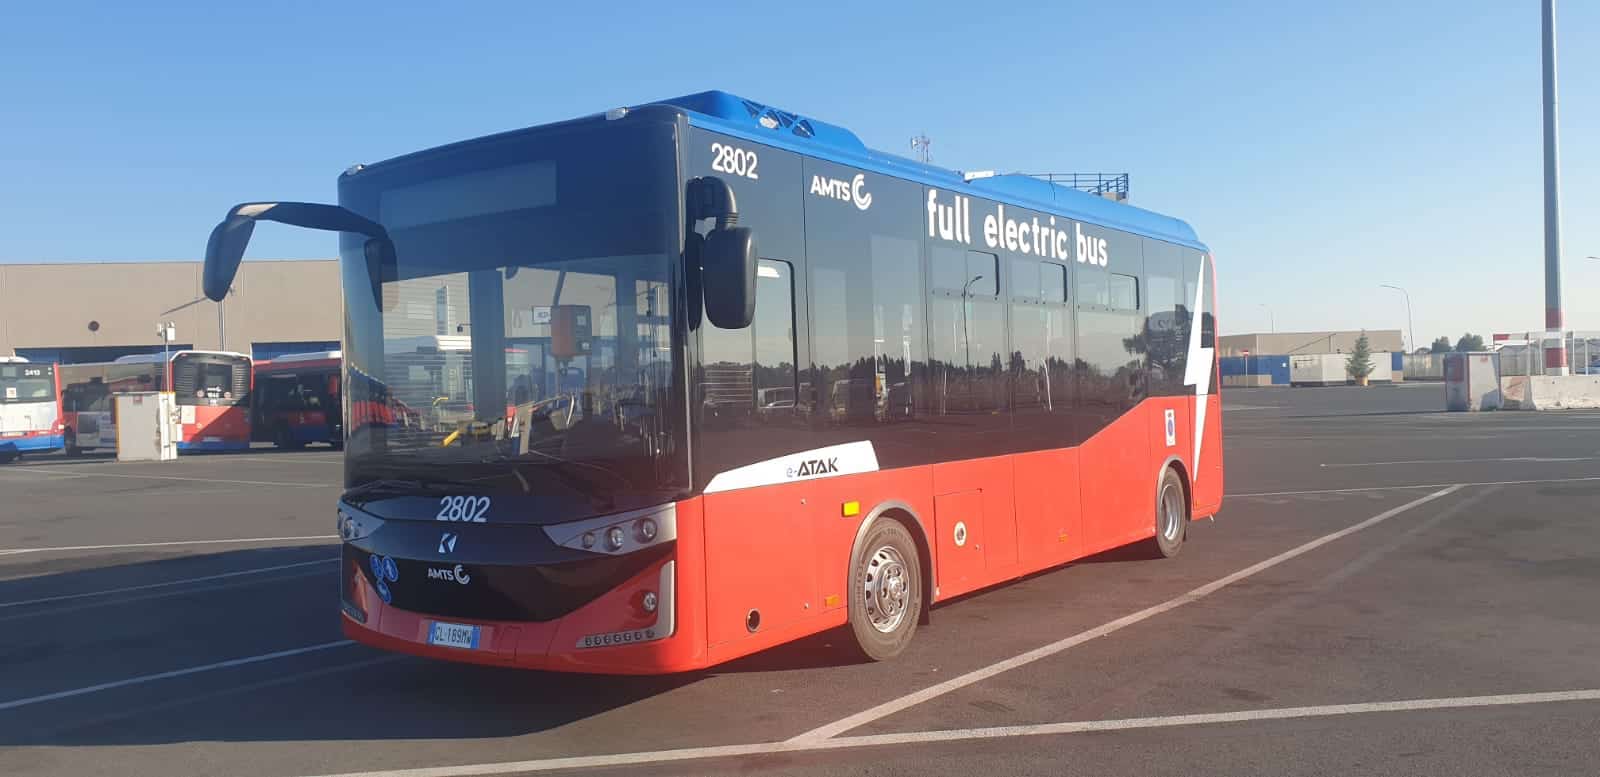 Primi autobus elettrici a Catania, in circolazione i nuovi mezzi “green” – VIDEO